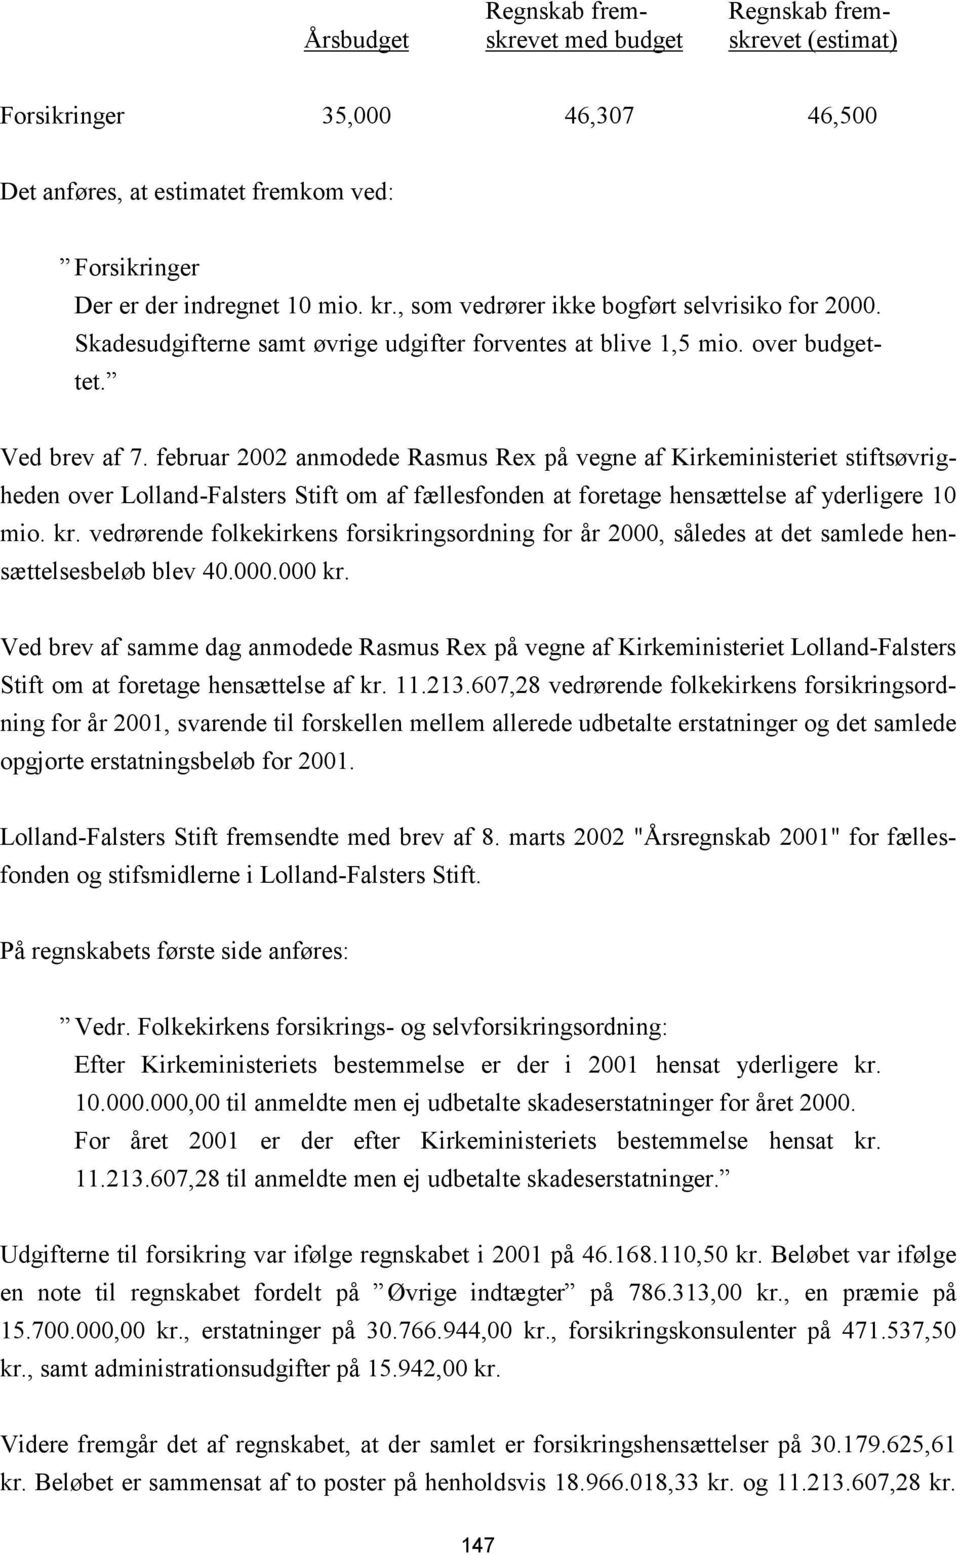 februar 2002 anmodede Rasmus Rex på vegne af Kirkeministeriet stiftsøvrigheden over Lolland-Falsters Stift om af fællesfonden at foretage hensættelse af yderligere 10 mio. kr.